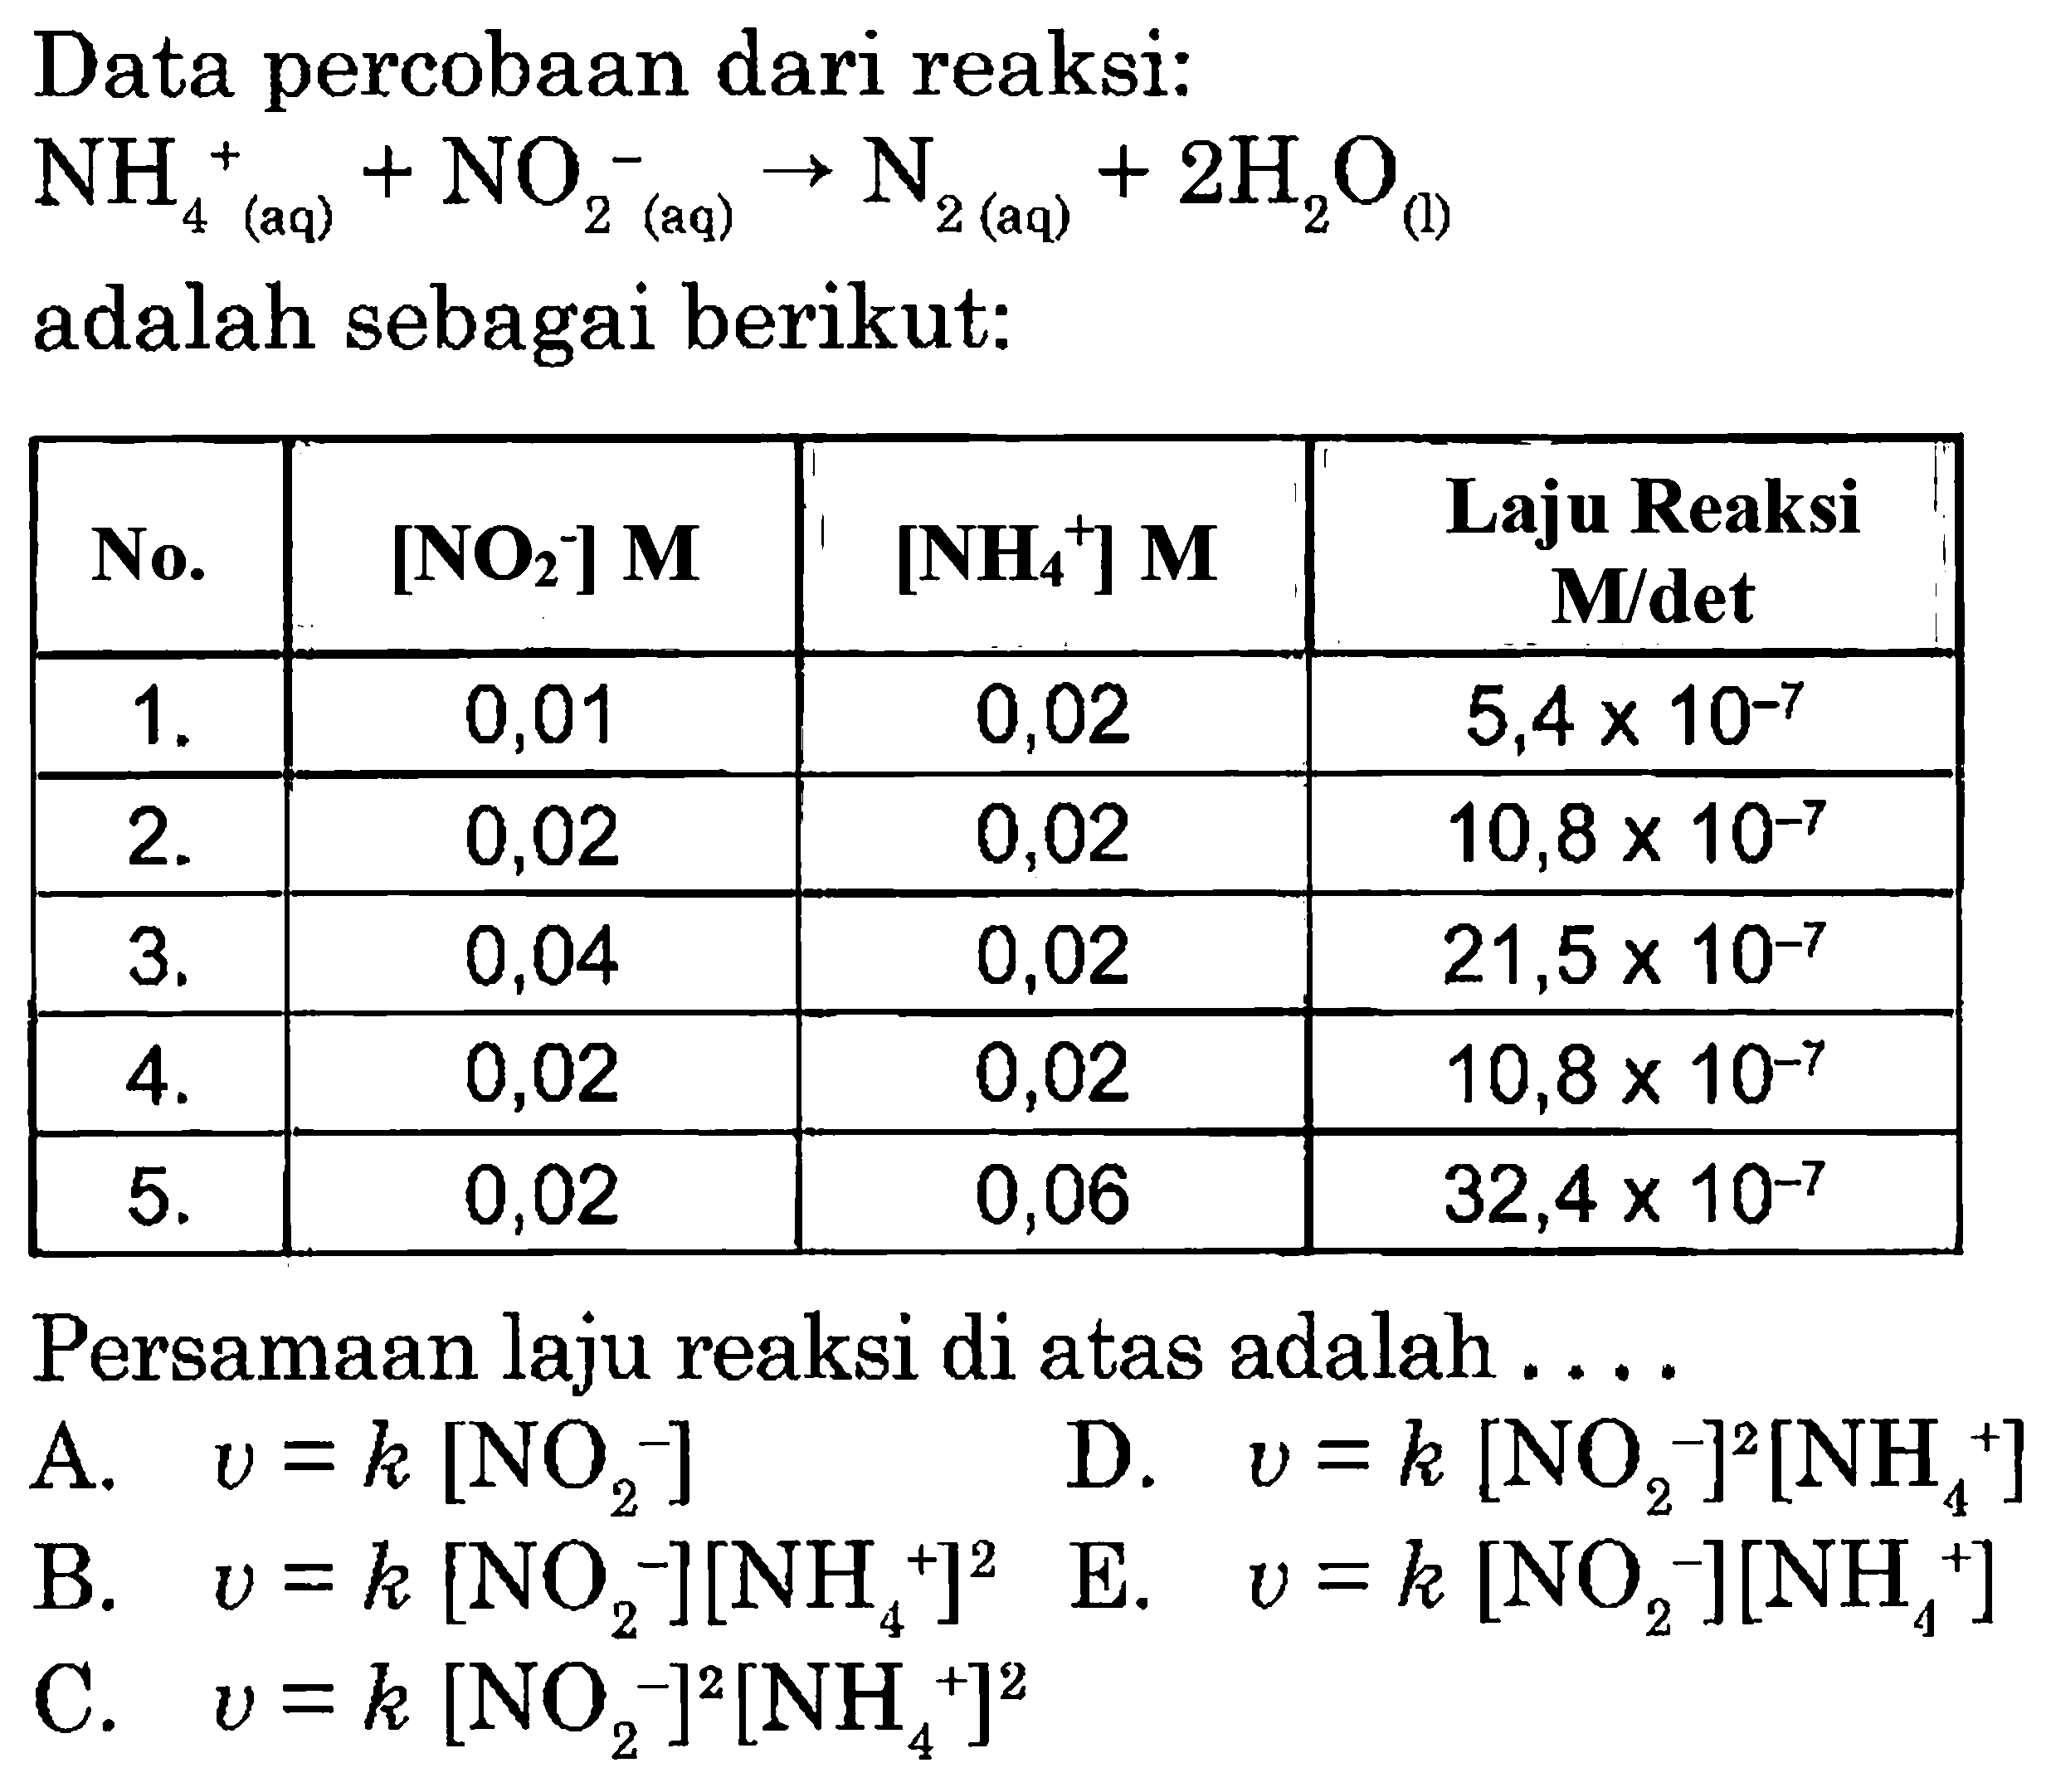 Data percobaan dari reaksi: NH4^+(aq) + NO2^-(aq) -> N2(aq) + 2H2O (l) adalah sebagai berikut: No. [NO2^-] M [NH4^+] M Laju Reaksi M/det 1 . 0,01 0,02 5,4 x 10^(-7) 2 . 0,02 0,02 10,8 x 10^(-7) 3 . 0,04 0,02 21,5 x 10^(-7) 4 . 0,02 0,02 10,8 x 10^(-7) 5 . 0,02 0,06 32,4 x 10^(-7) Persamaan laju reaksi di atas adalah .... 